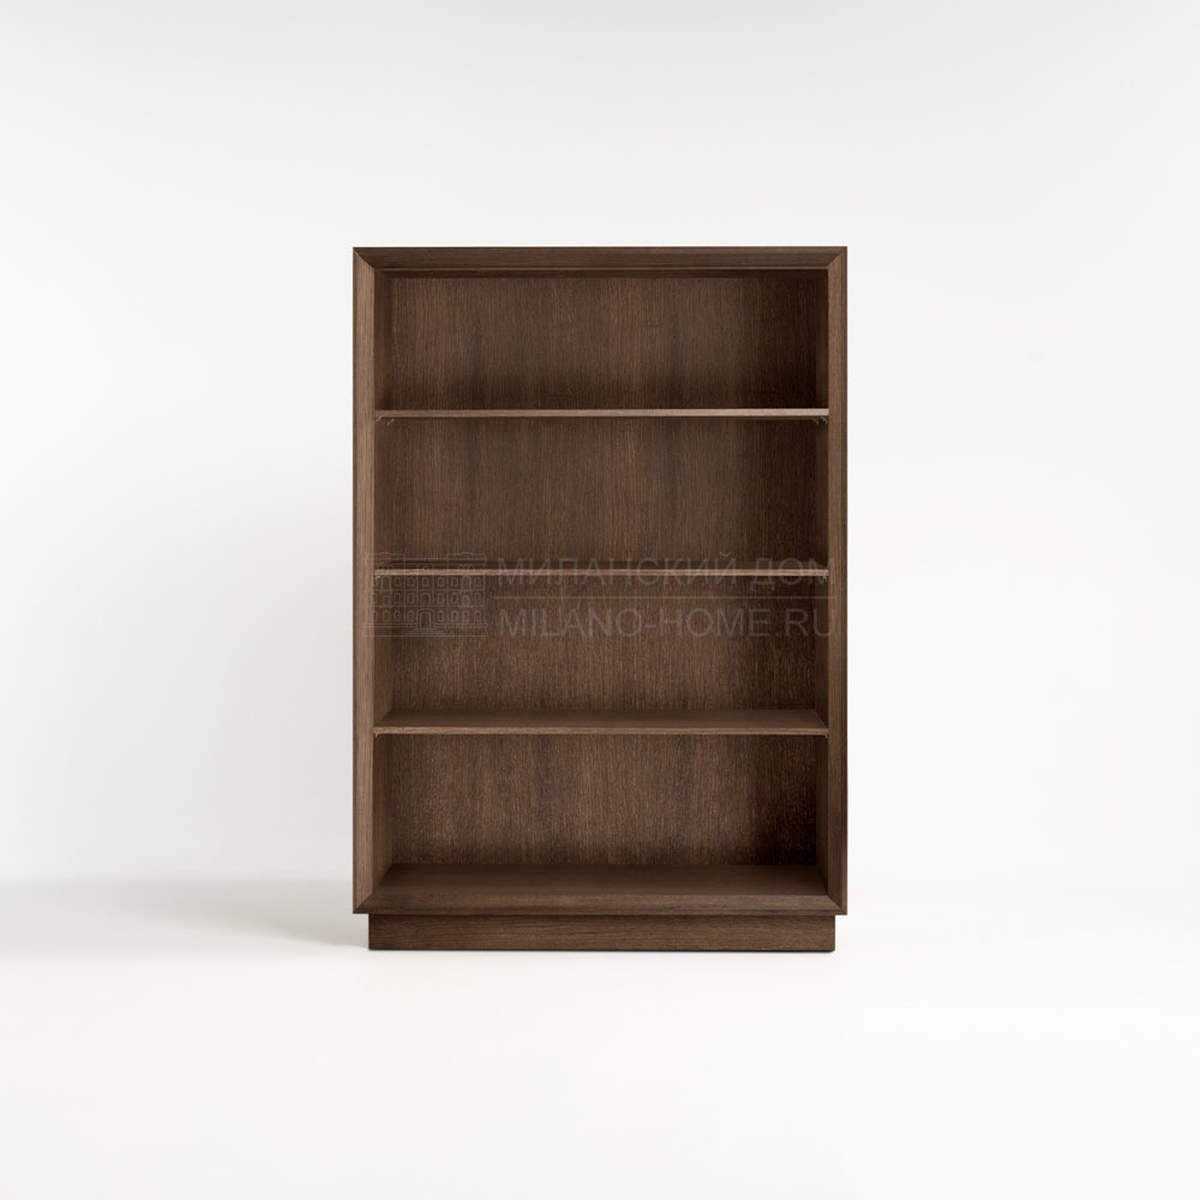 Книжный шкаф Club bookcase из Италии фабрики TOSCONOVA